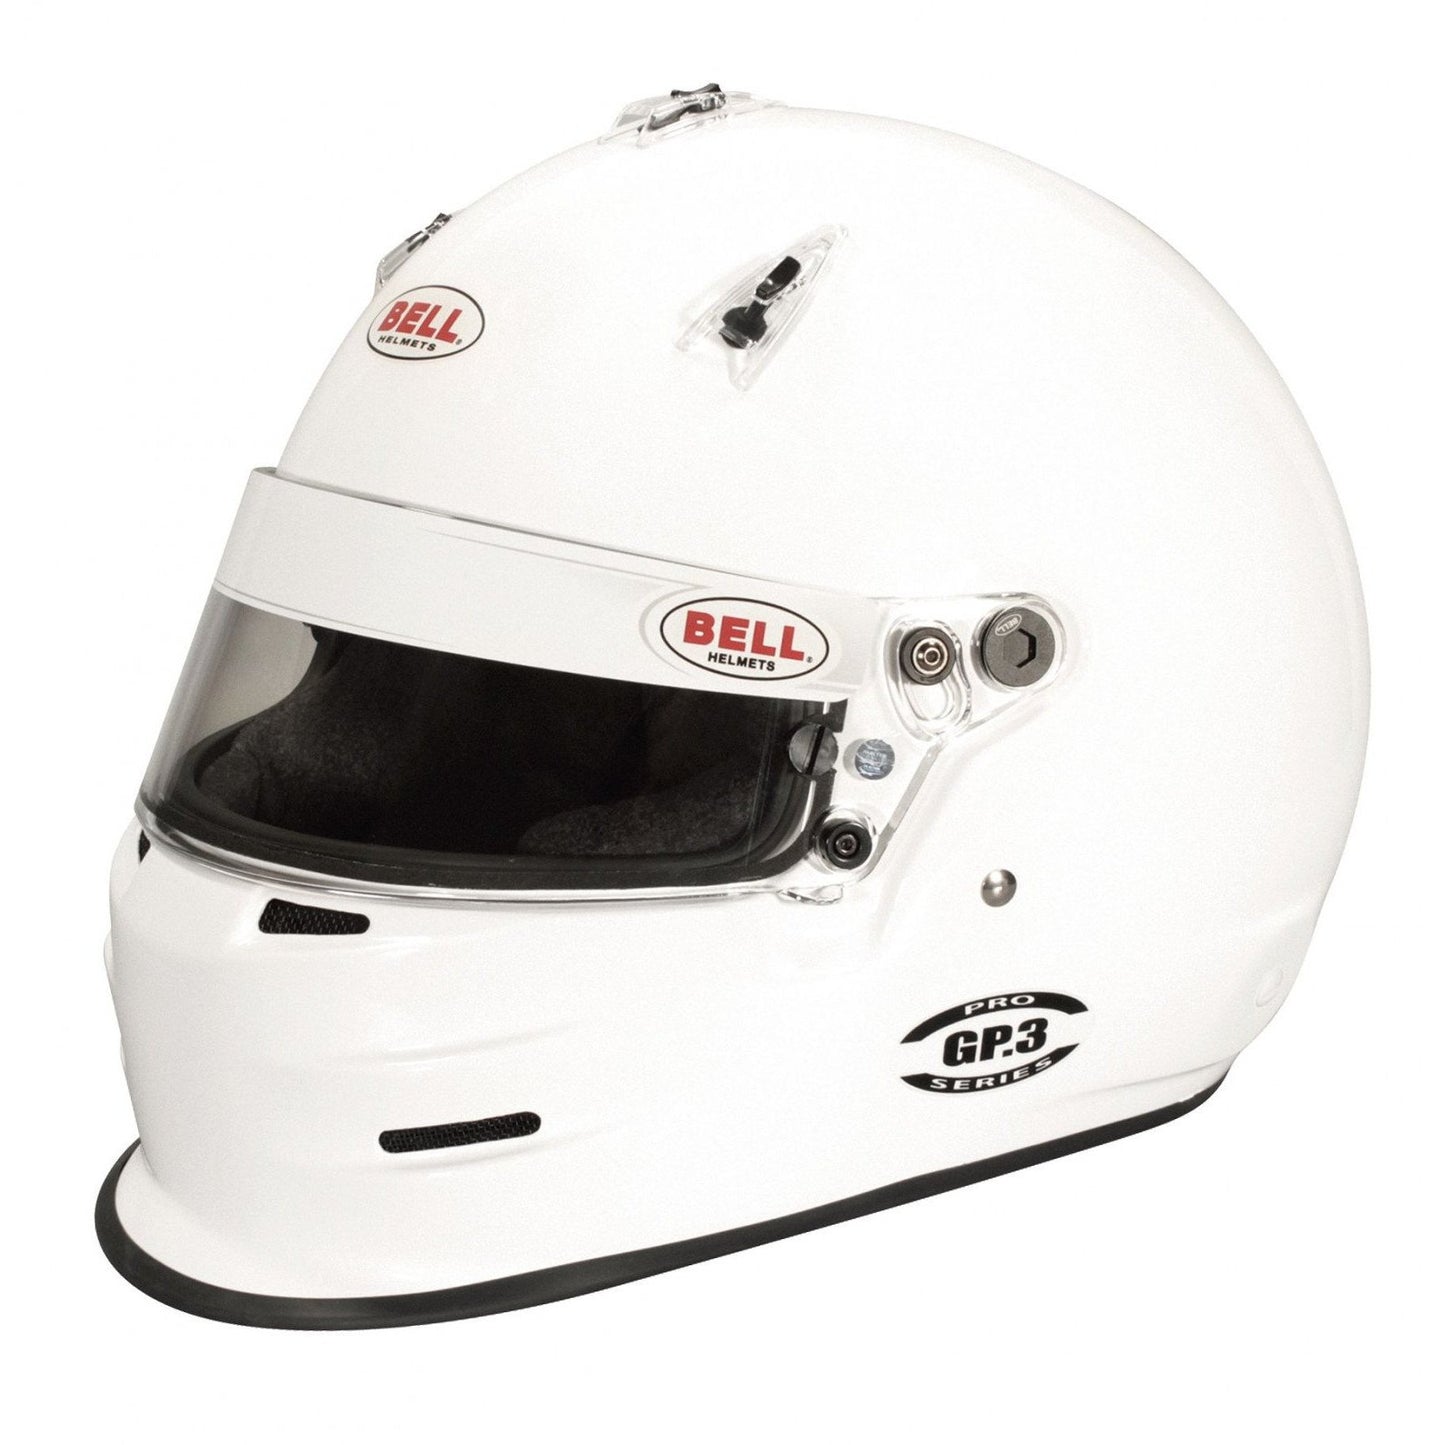 Bell GP3 White Racing Helmet - 61 cm-BEL-1313005-Helmets-Bell-JDMuscle